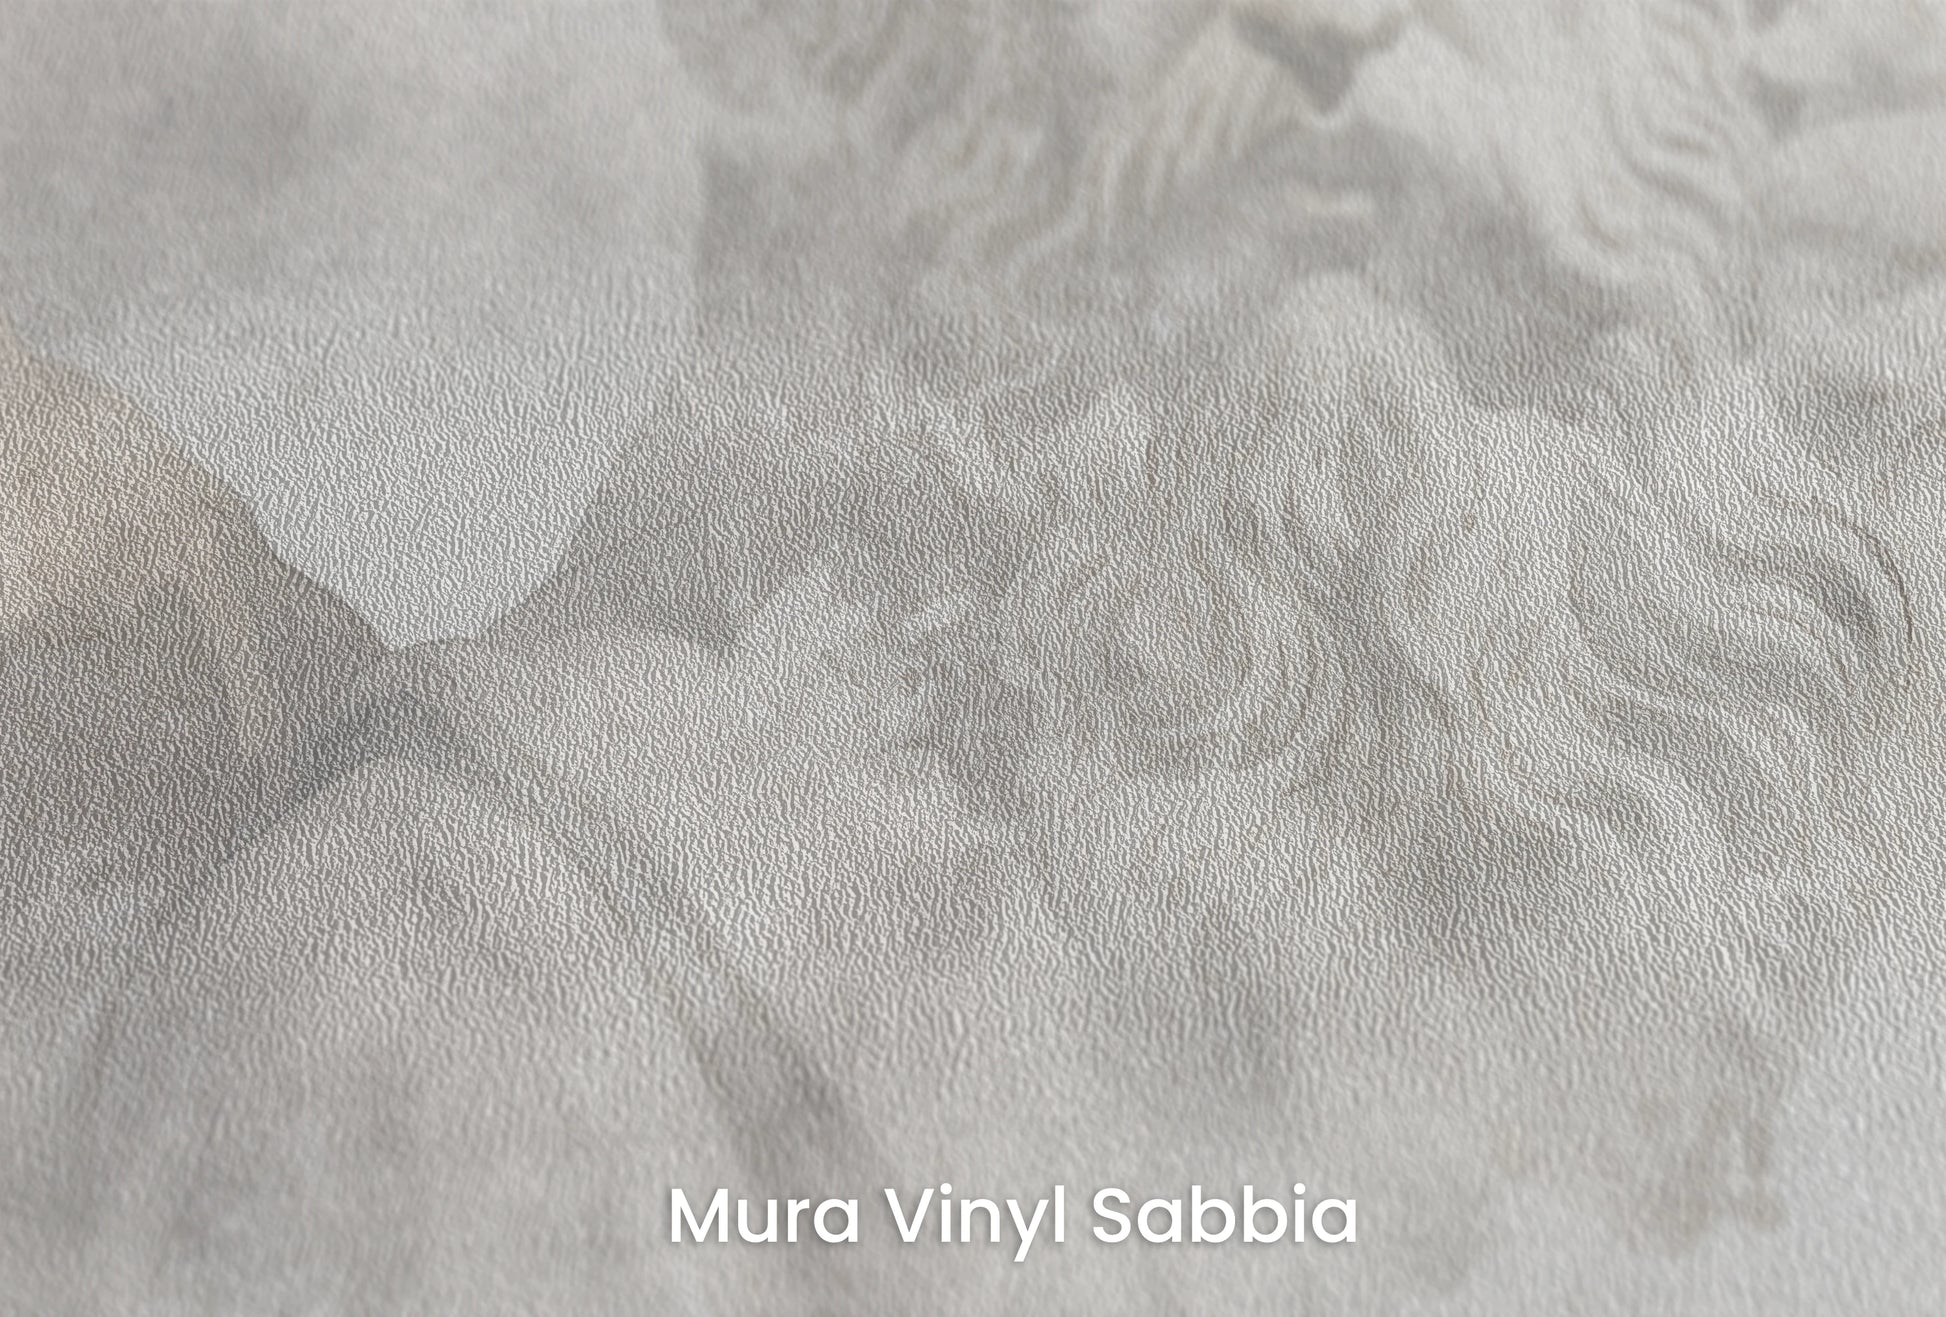 Zbliżenie na artystyczną fototapetę o nazwie Zeus's Introspection na podłożu Mura Vinyl Sabbia struktura grubego ziarna piasku.